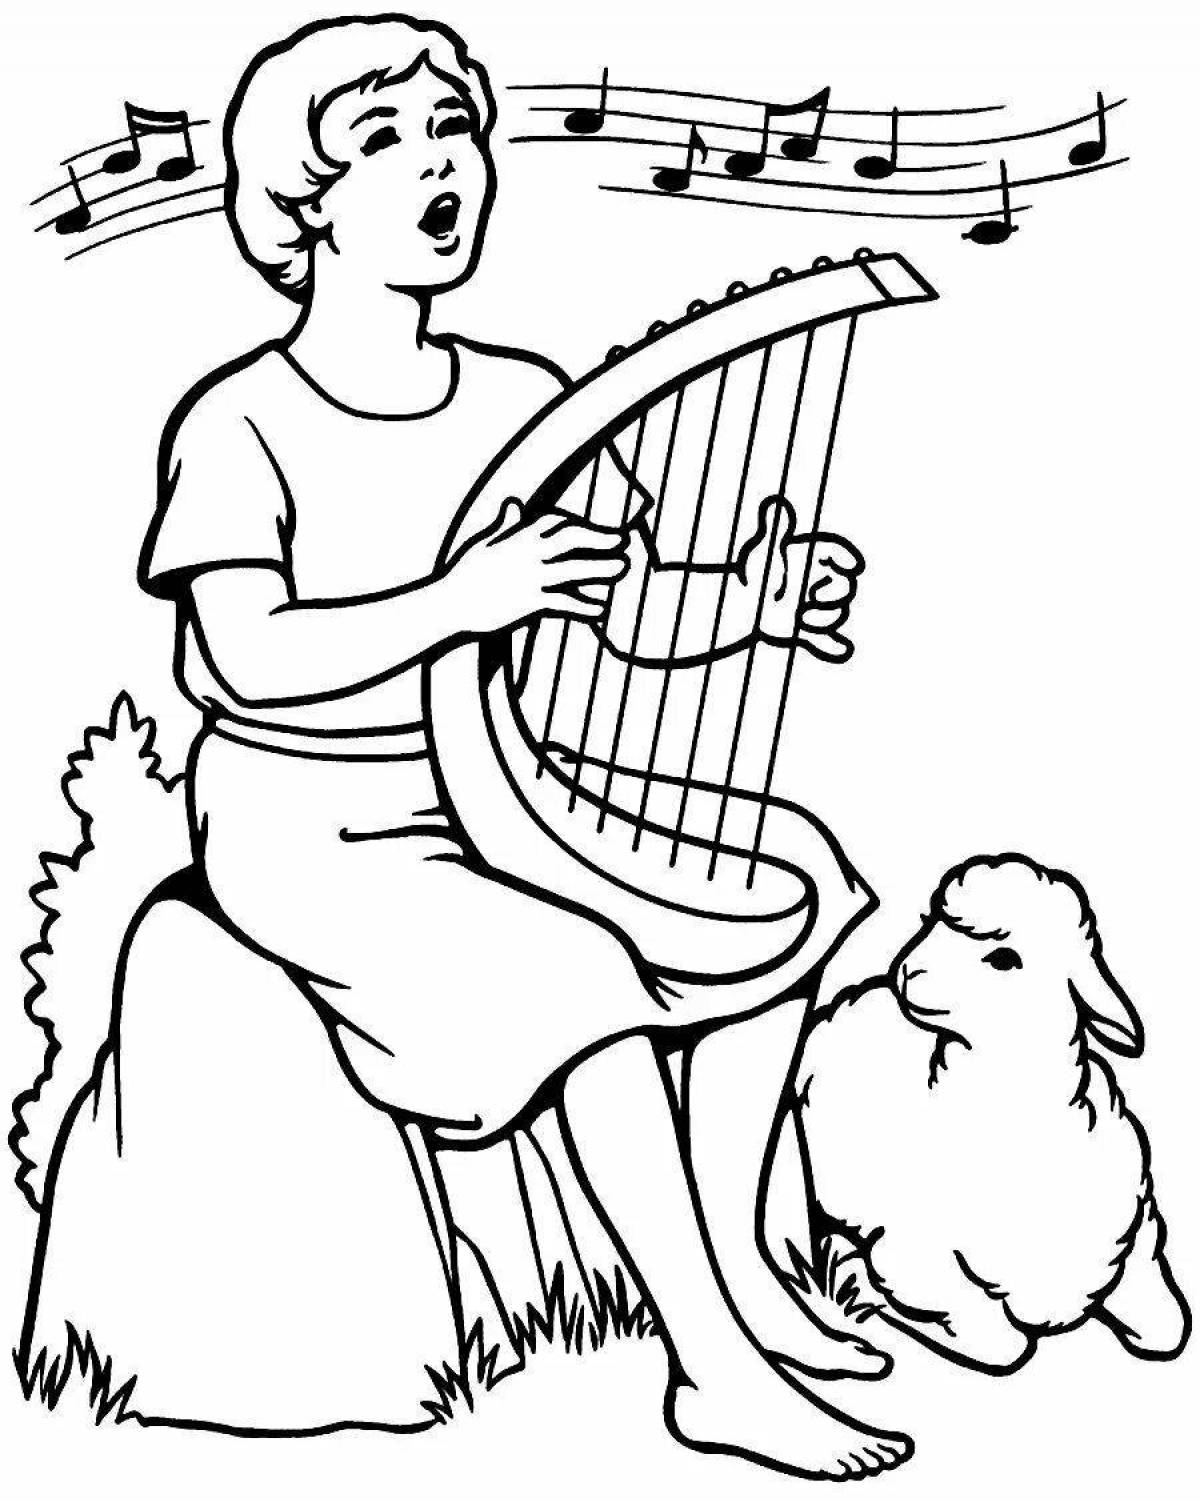 Magic harp coloring book for kids